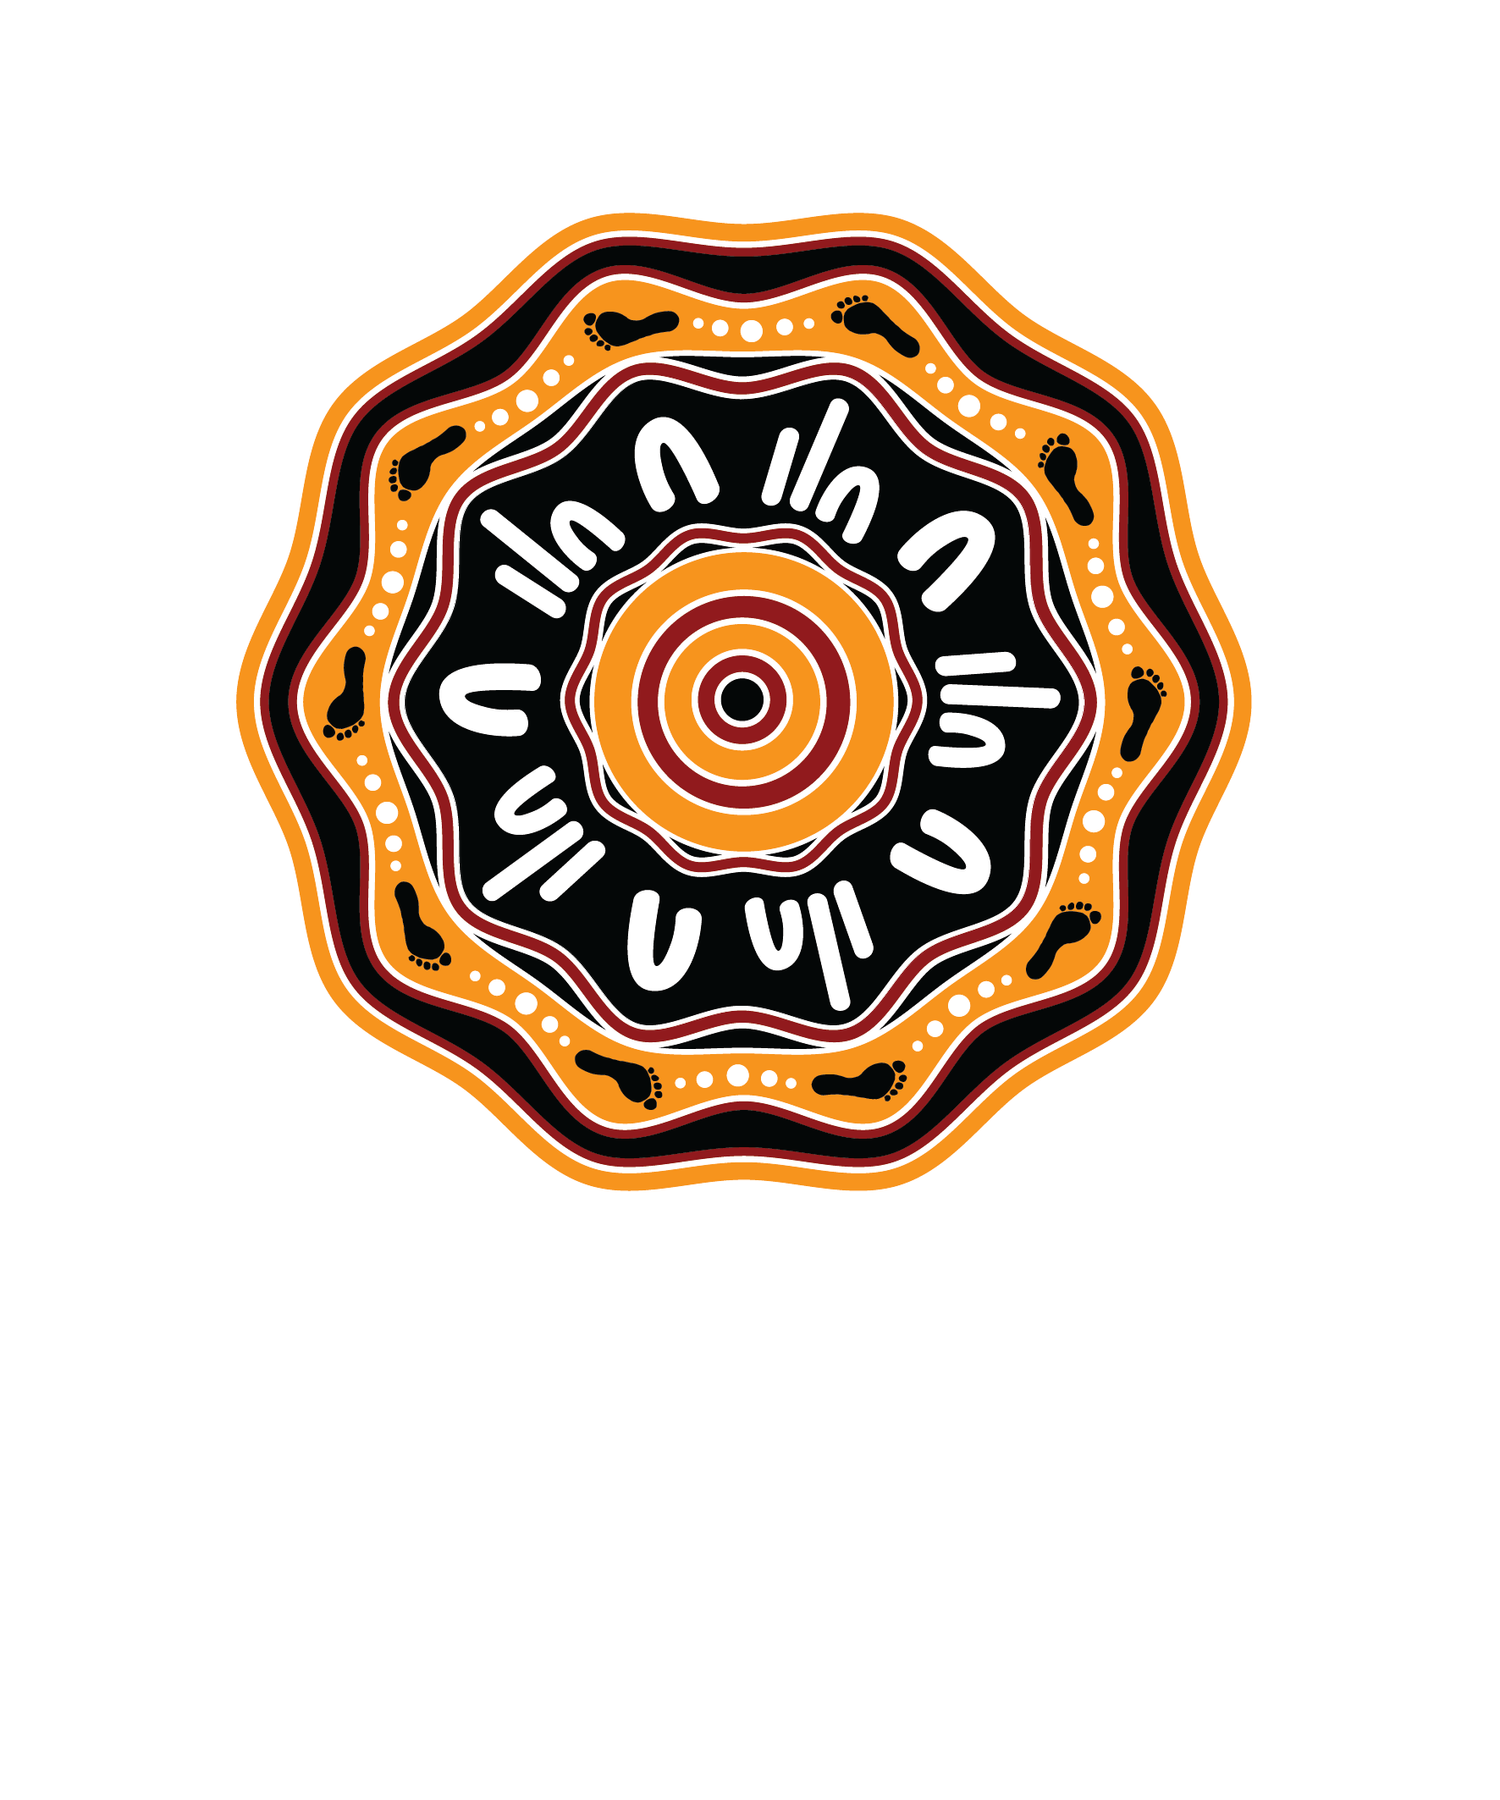 Wanyaari